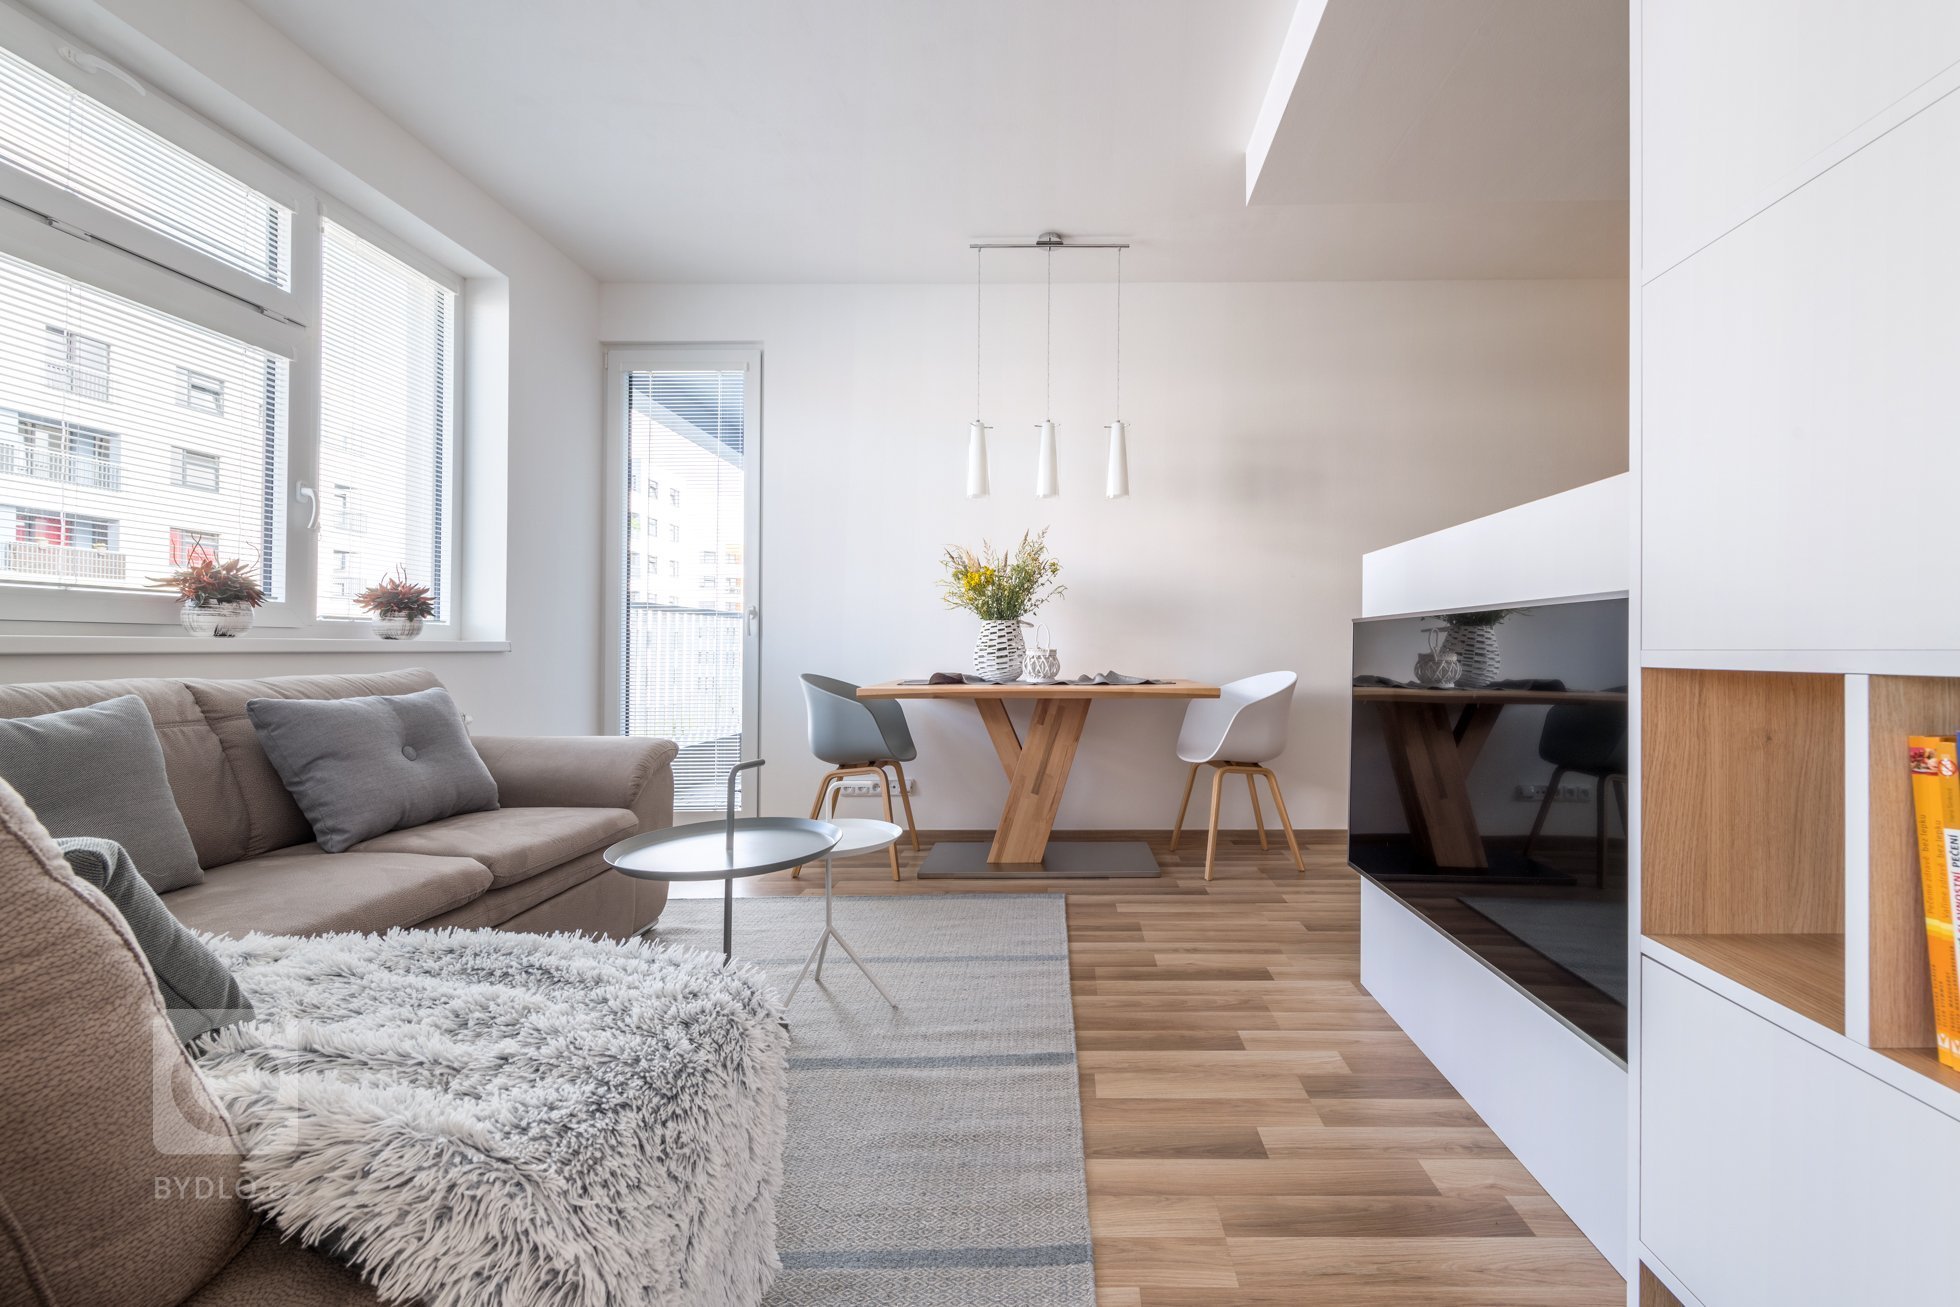 Interiér menšího bytu pro mladý pár je zařízen funkčně a jednoduše, s ohledem na úložné prostory.&nbsp;
